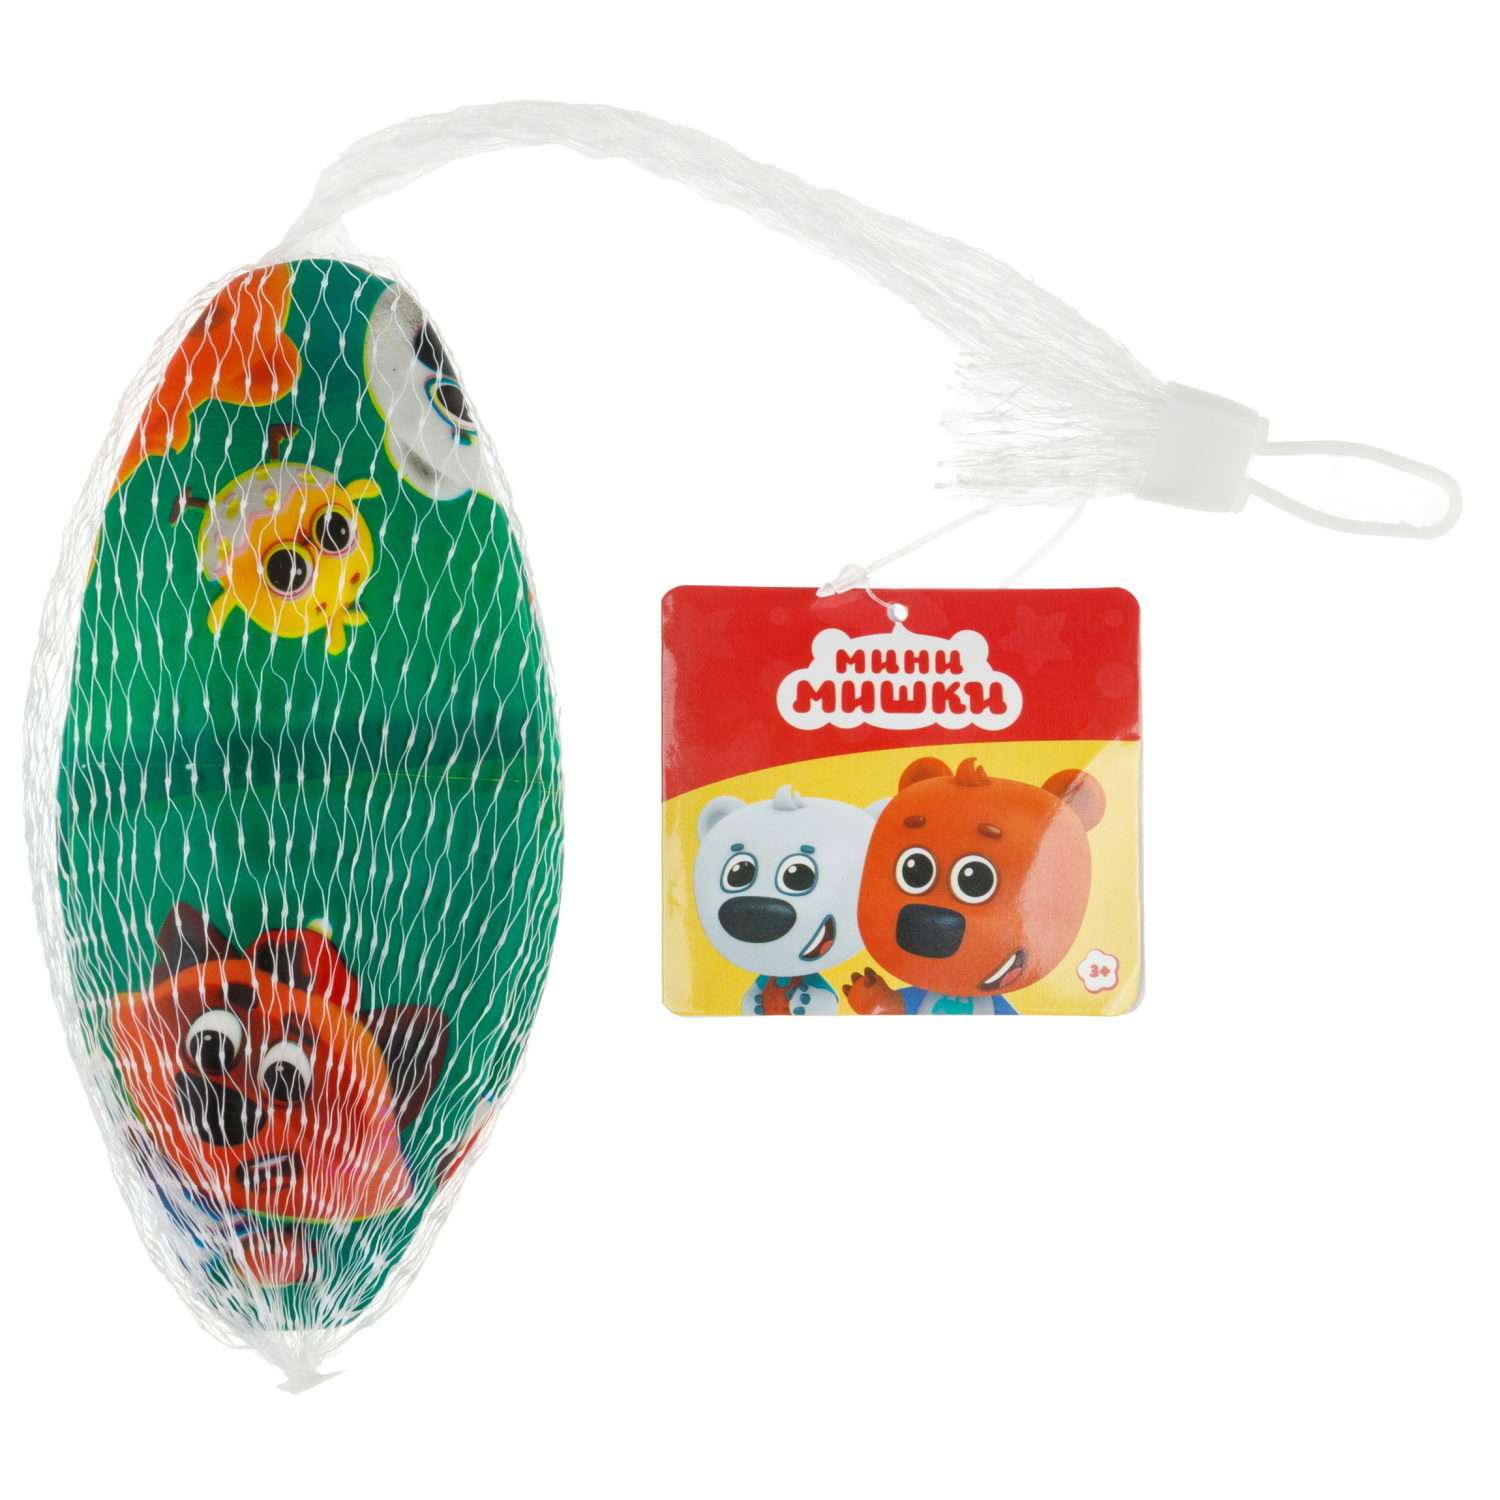 Мяч детский 15 см 1TOY Ми-Ми-Мишки Мини-мишки резиновый надувной для ребенка игрушки для улицы зеленый - фото 5